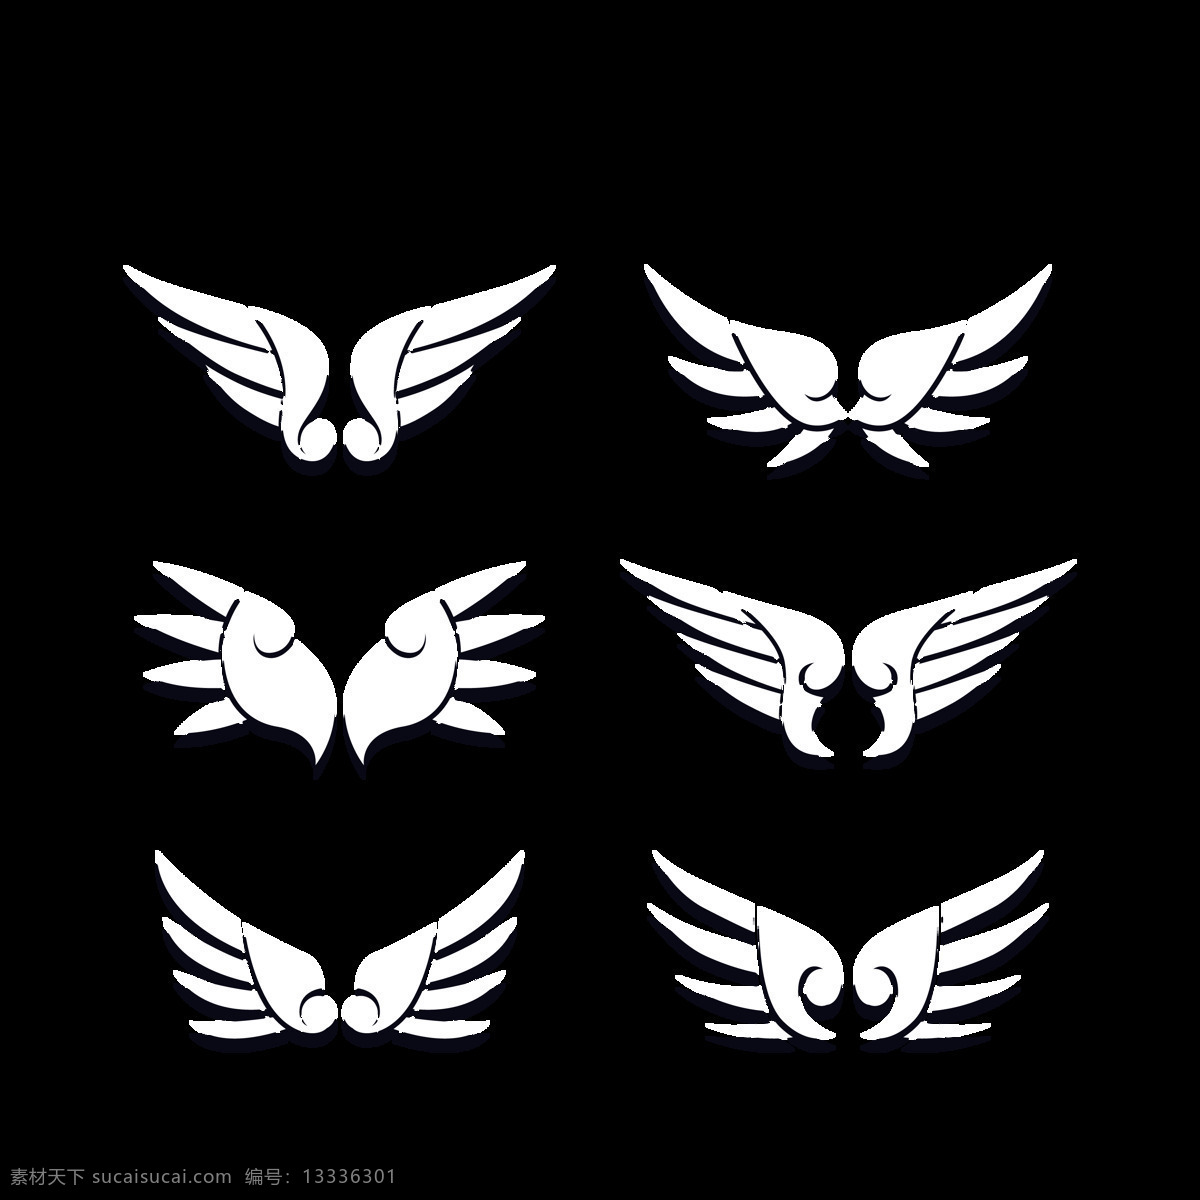 抽象 白色 翅膀 插图 免 抠 透明 图 层 手绘翅膀 翅膀元素 小 天使 卡通翅膀 翅膀图片素材 纹身图案 翅膀素材 手绘翅膀图片